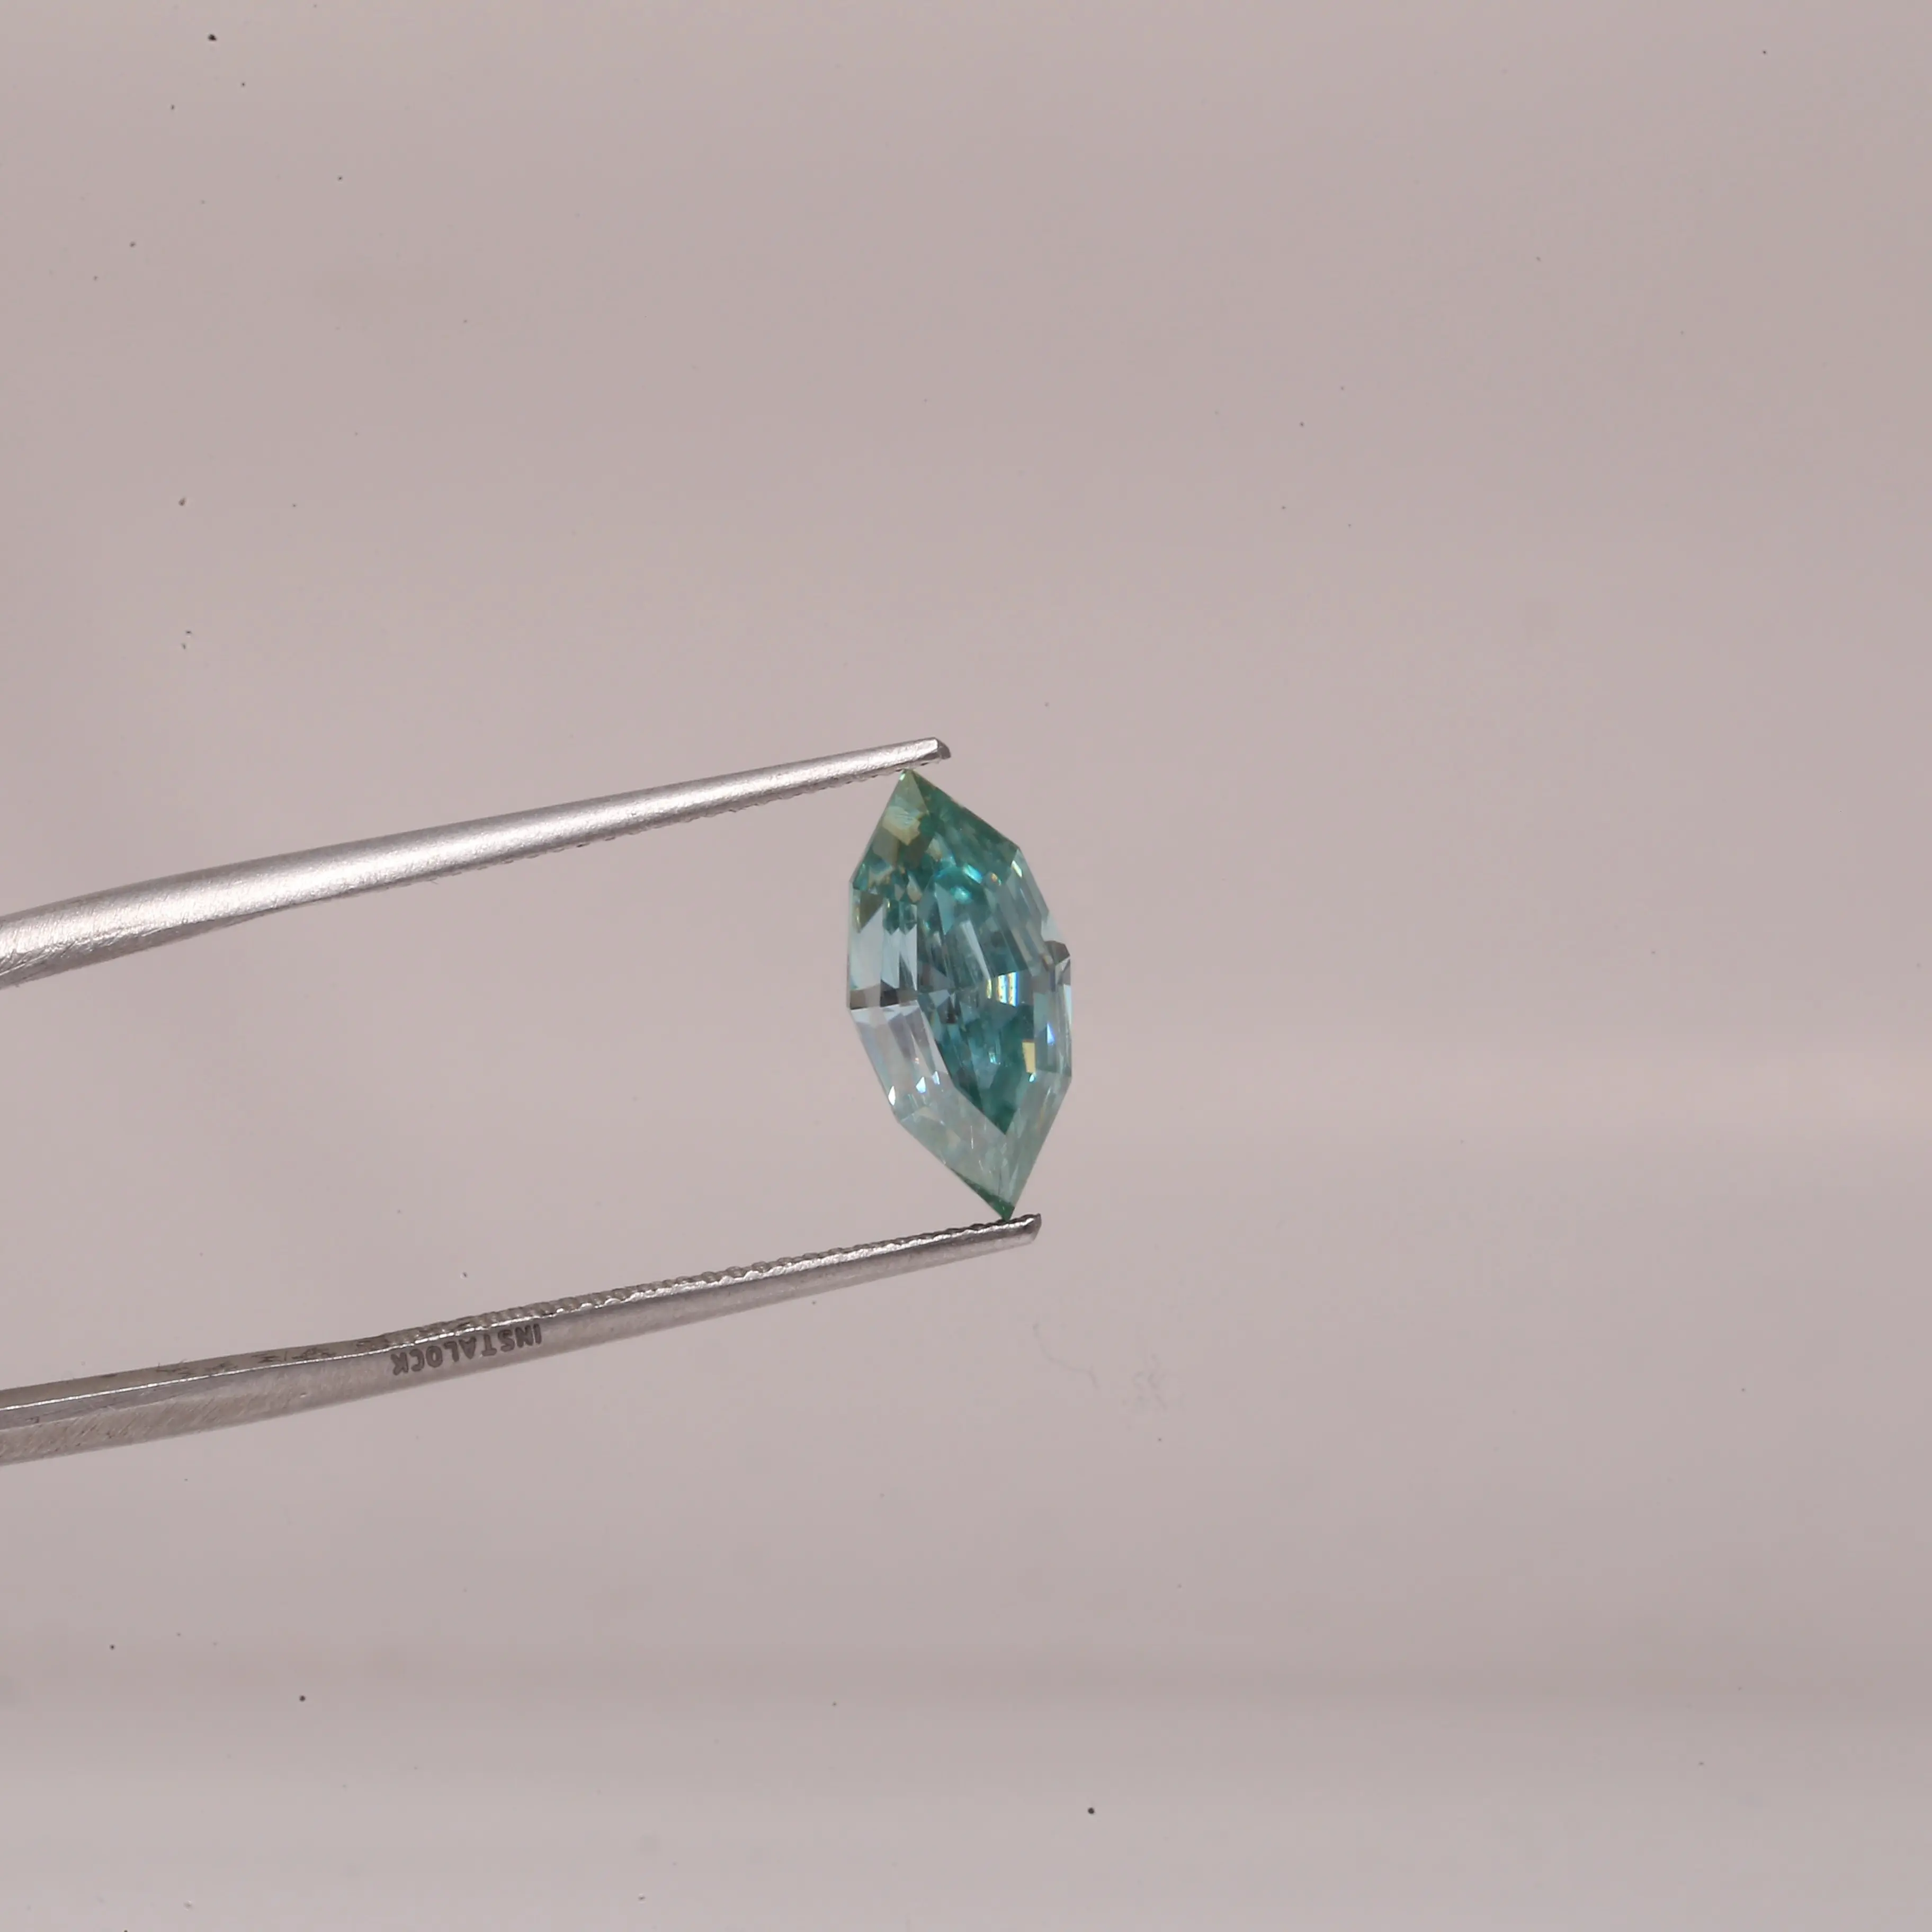 Met Een Prachtige 1-karaats Marquise Geslepen In Het Laboratorium Gekweekte Diamant Gecertificeerd Door Igi Vanwege Zijn Uitzonderlijke D-Kleur En Vvs-Helderheid